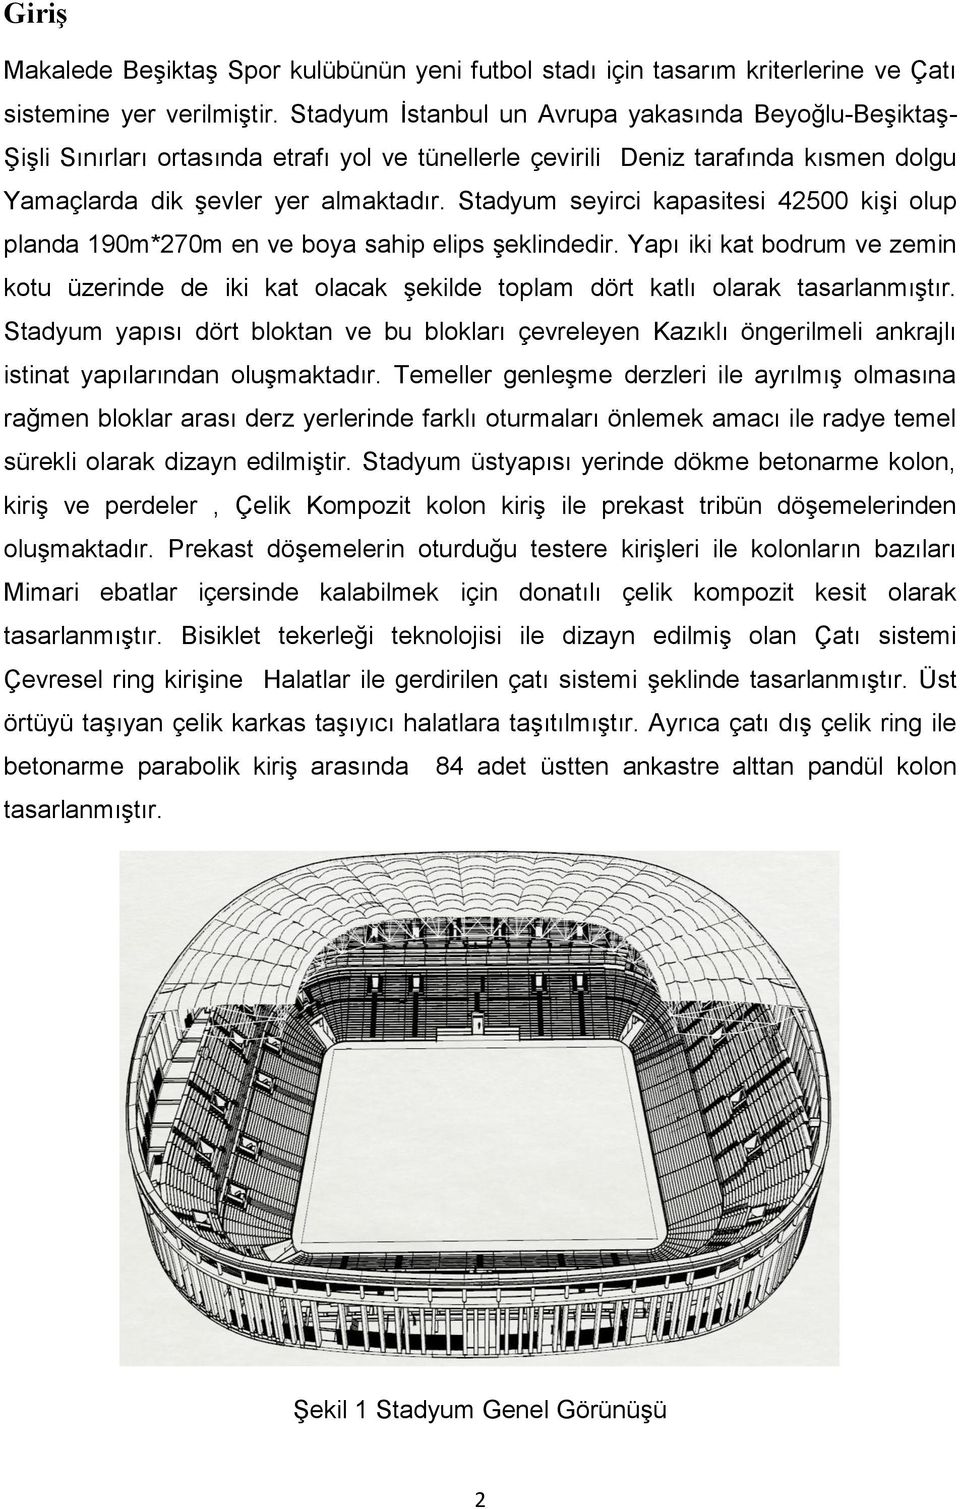 Stadyum seyirci kapasitesi 42500 kişi olup planda 190m*270m en ve boya sahip elips şeklindedir.